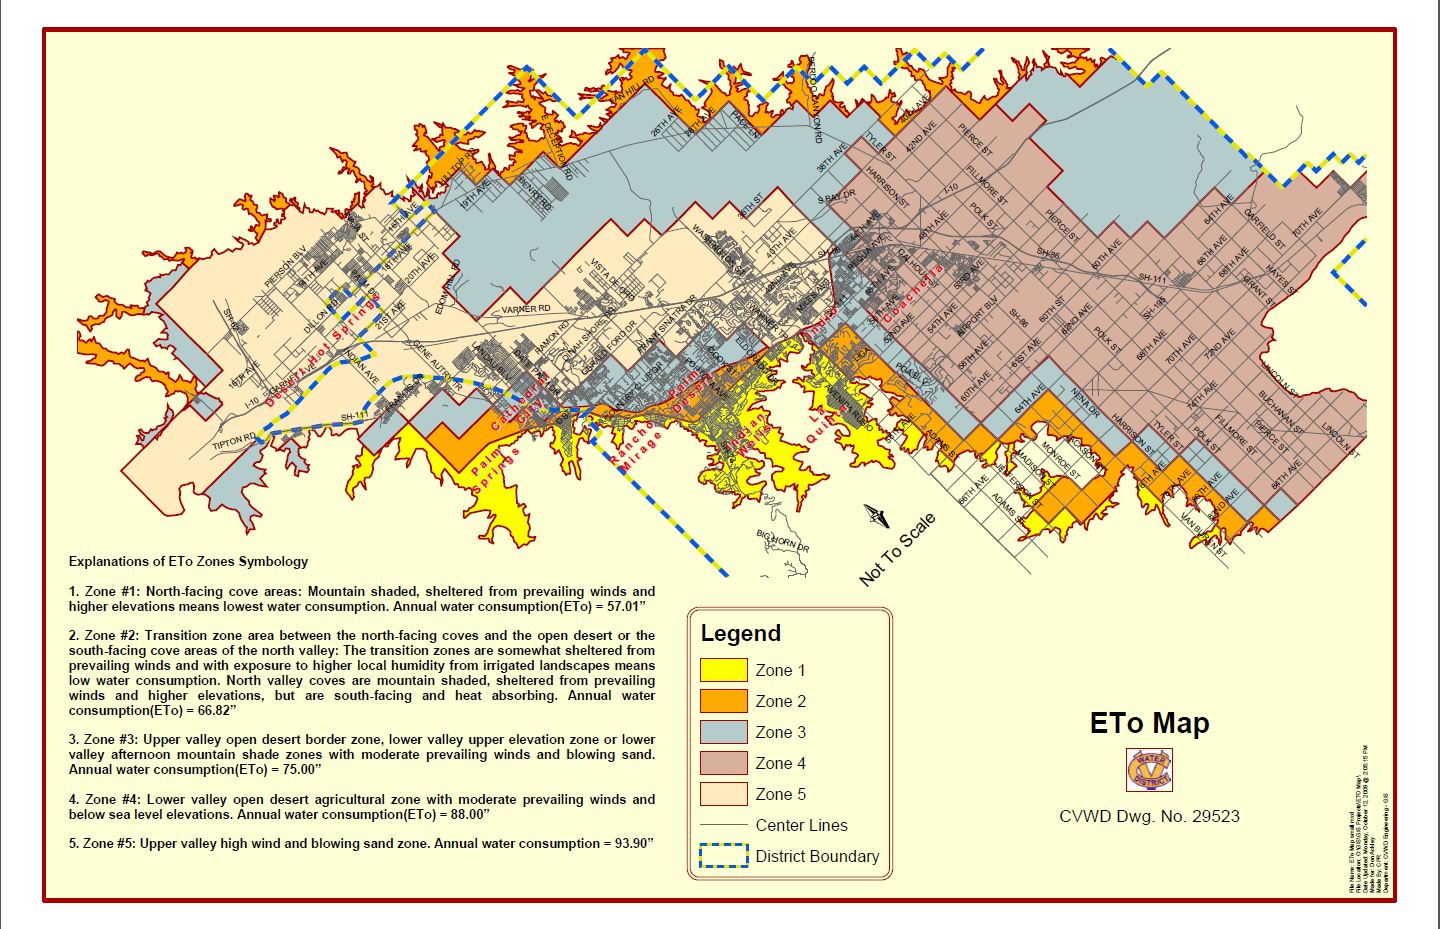 CVWD ETo Zone Map